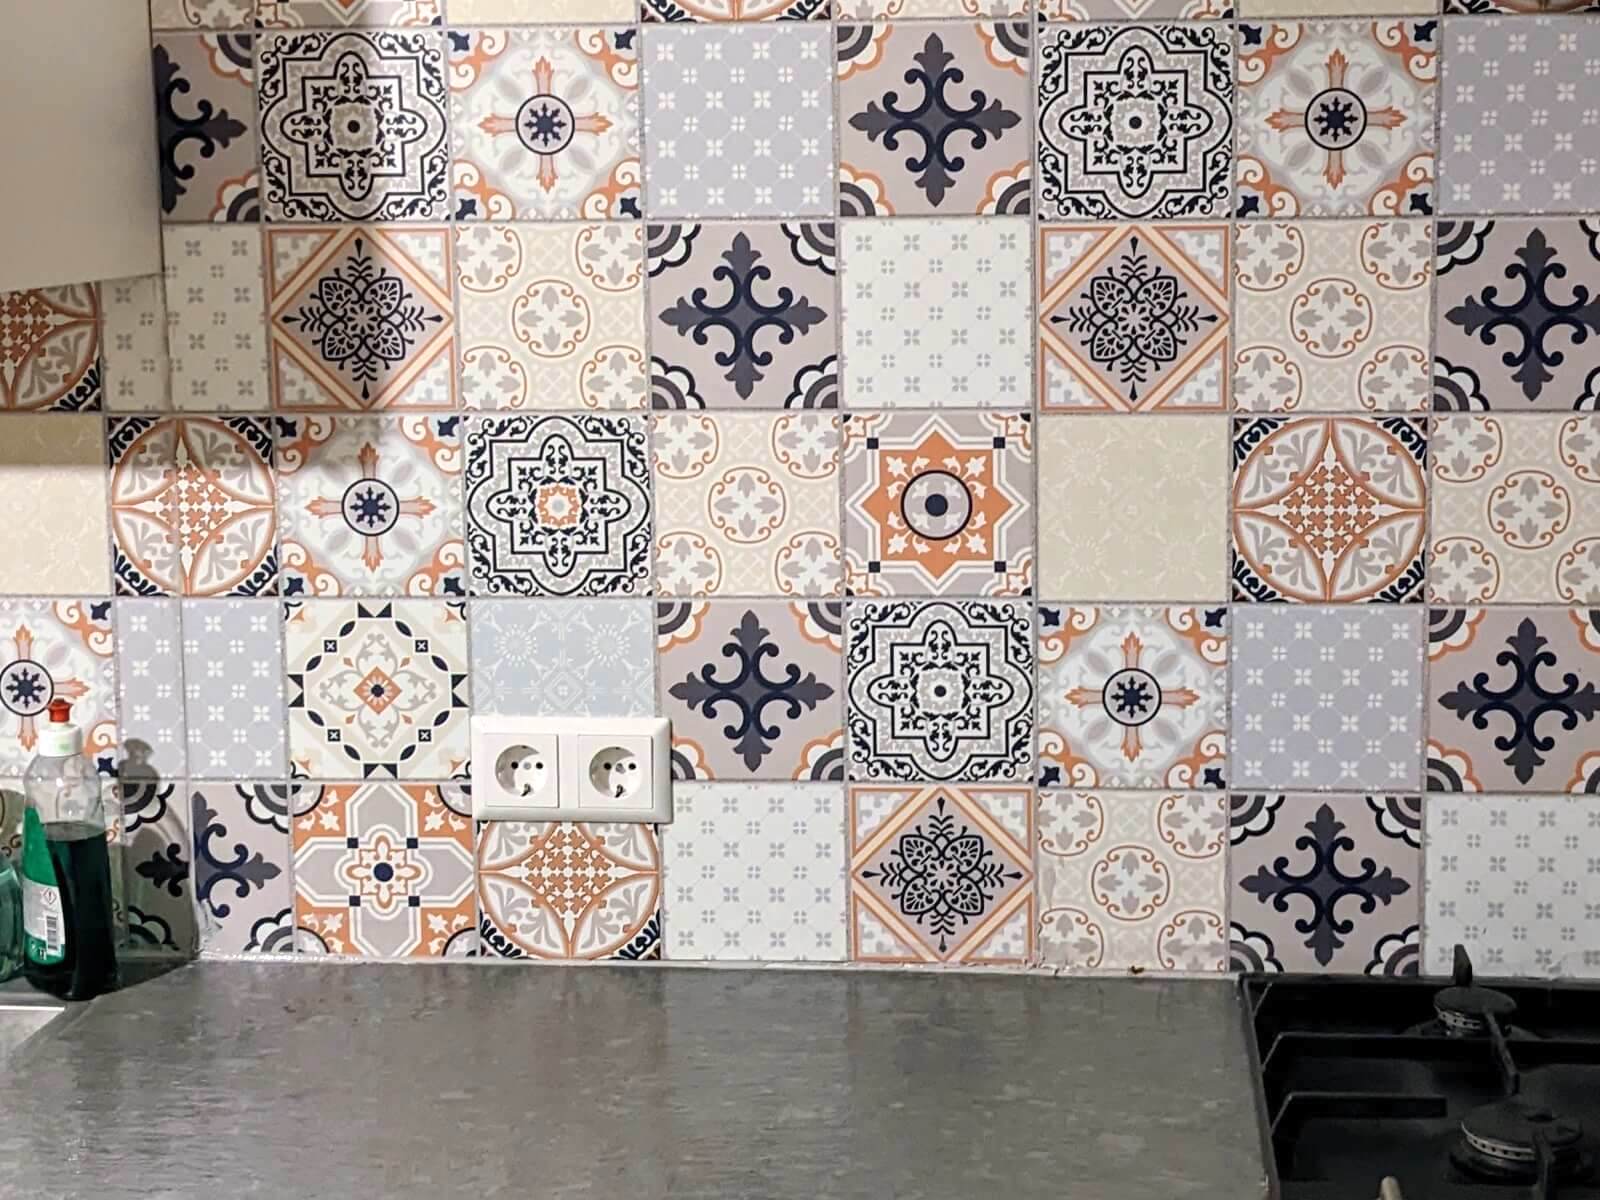 Backsplash with Portuguese Tile Design - Feldspar